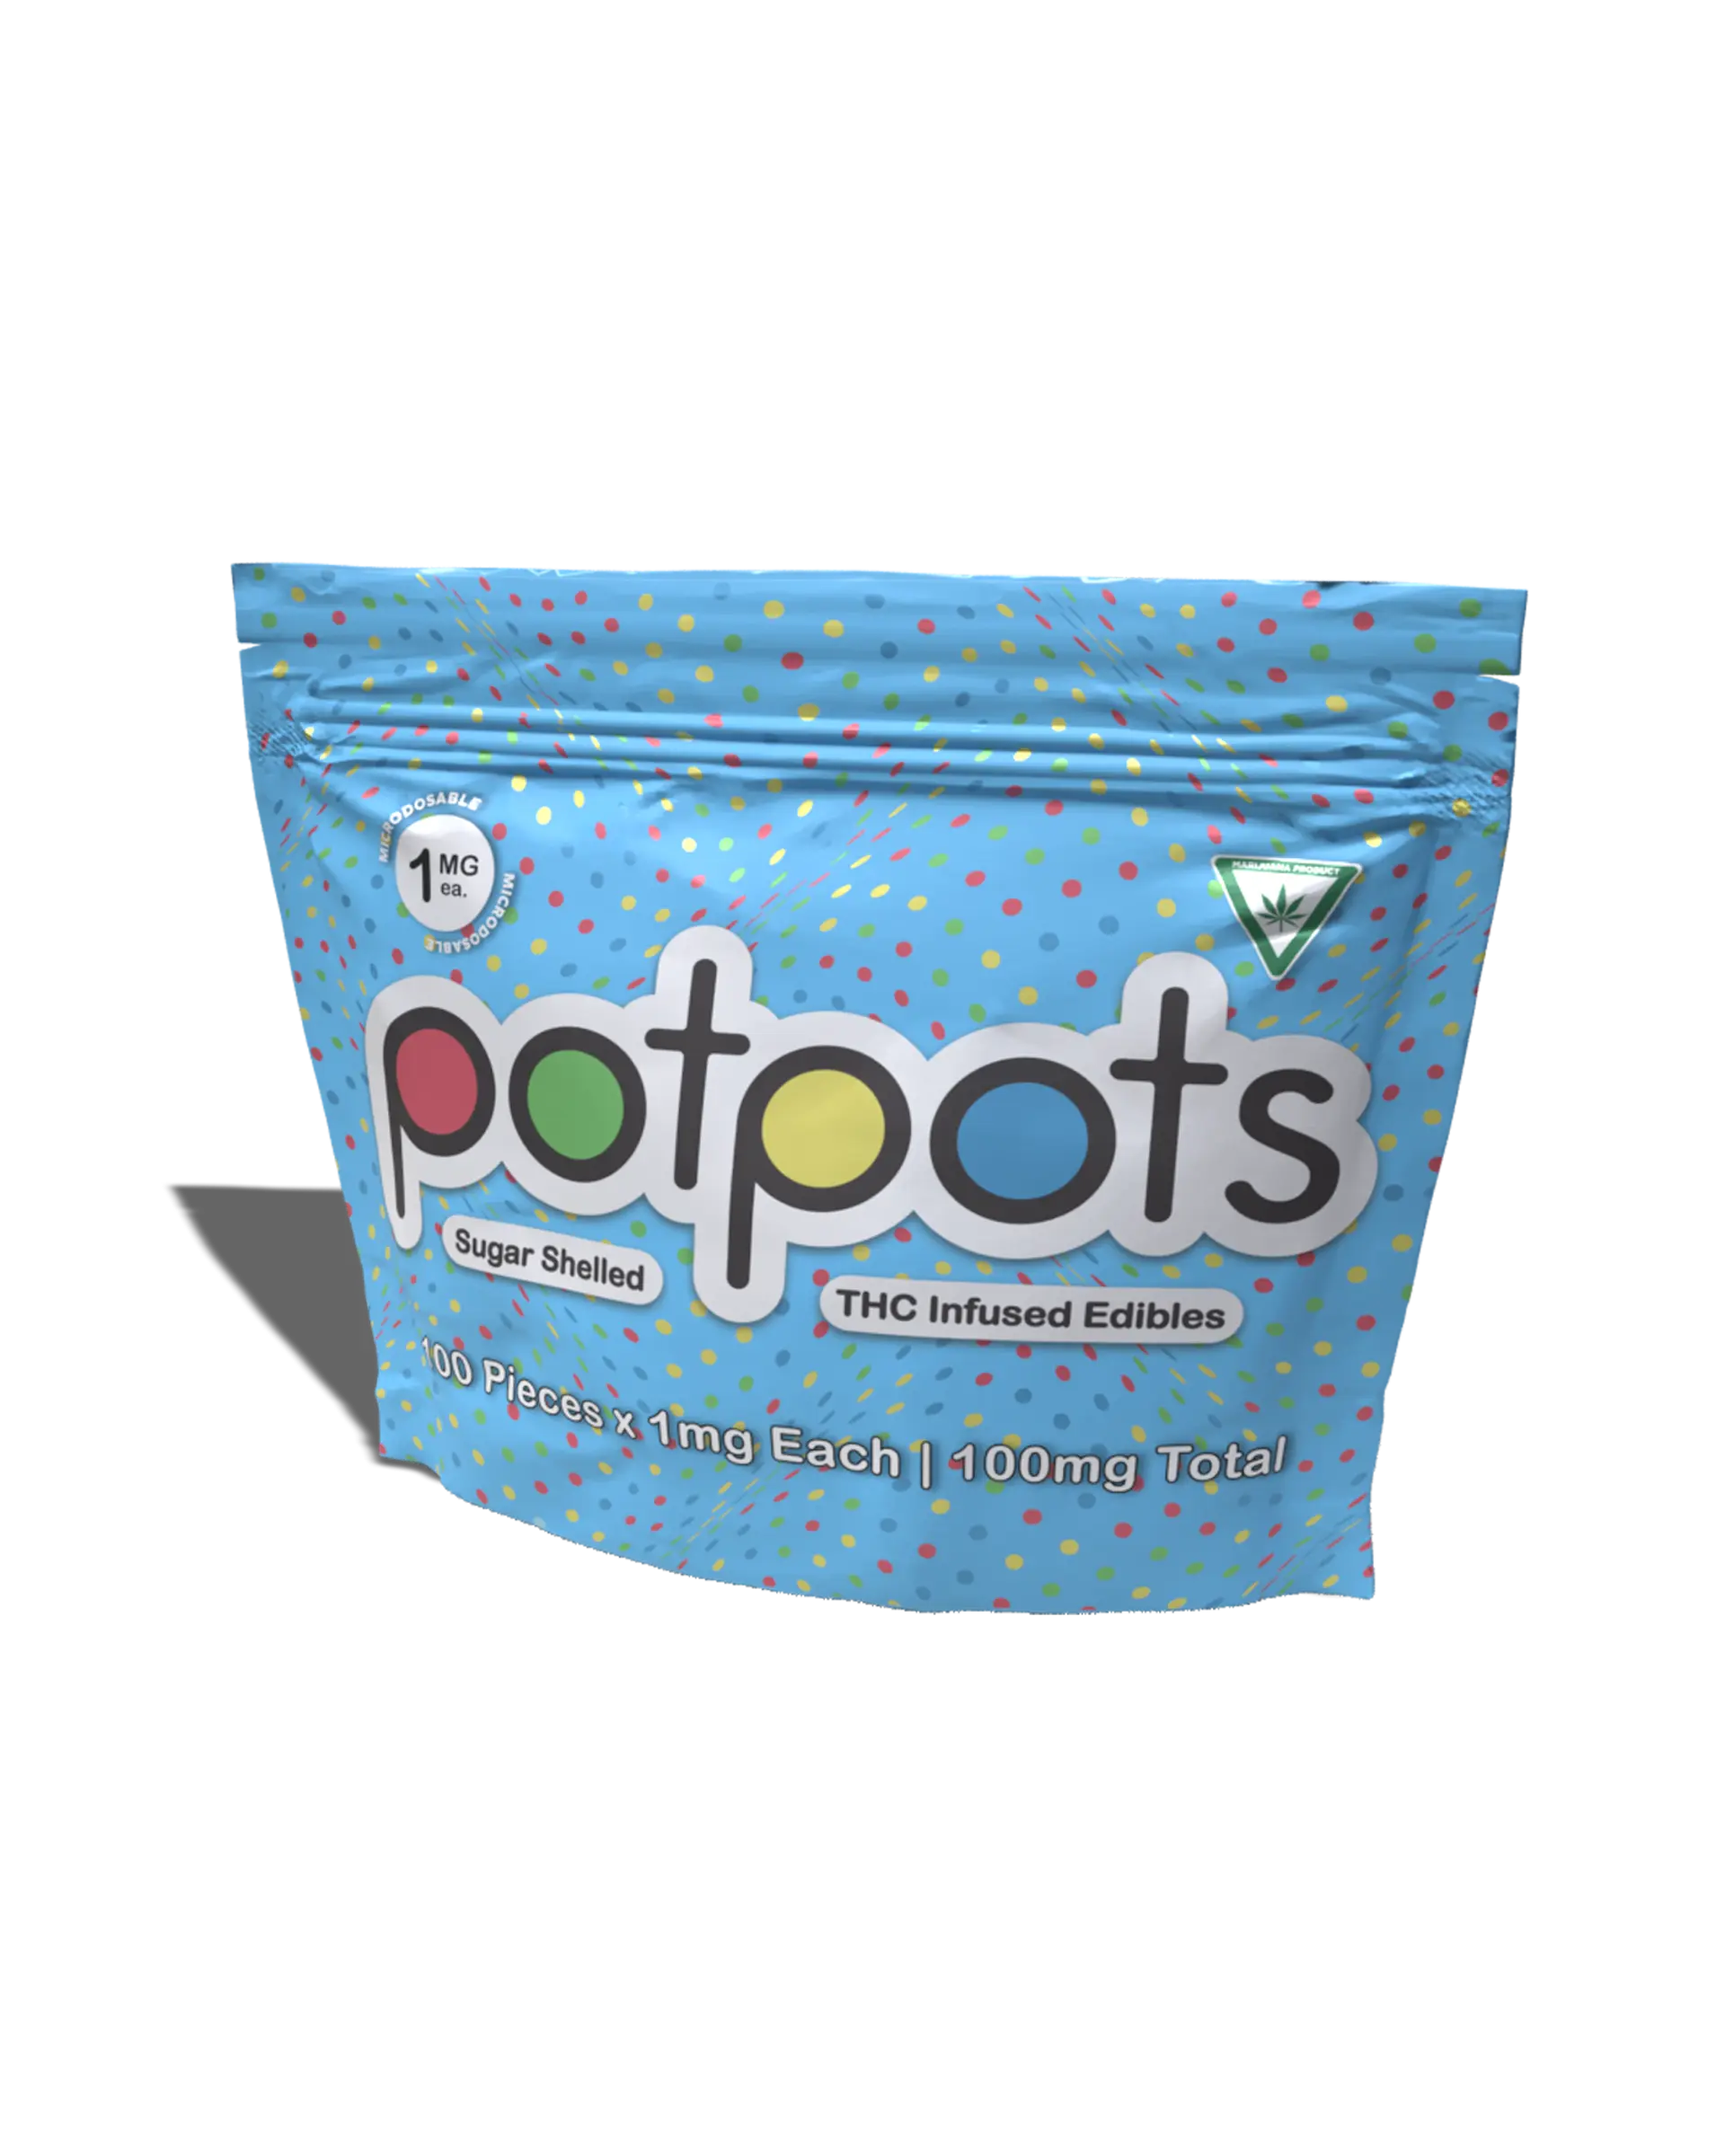 Pot Pots 100x1mg, 1 of 1